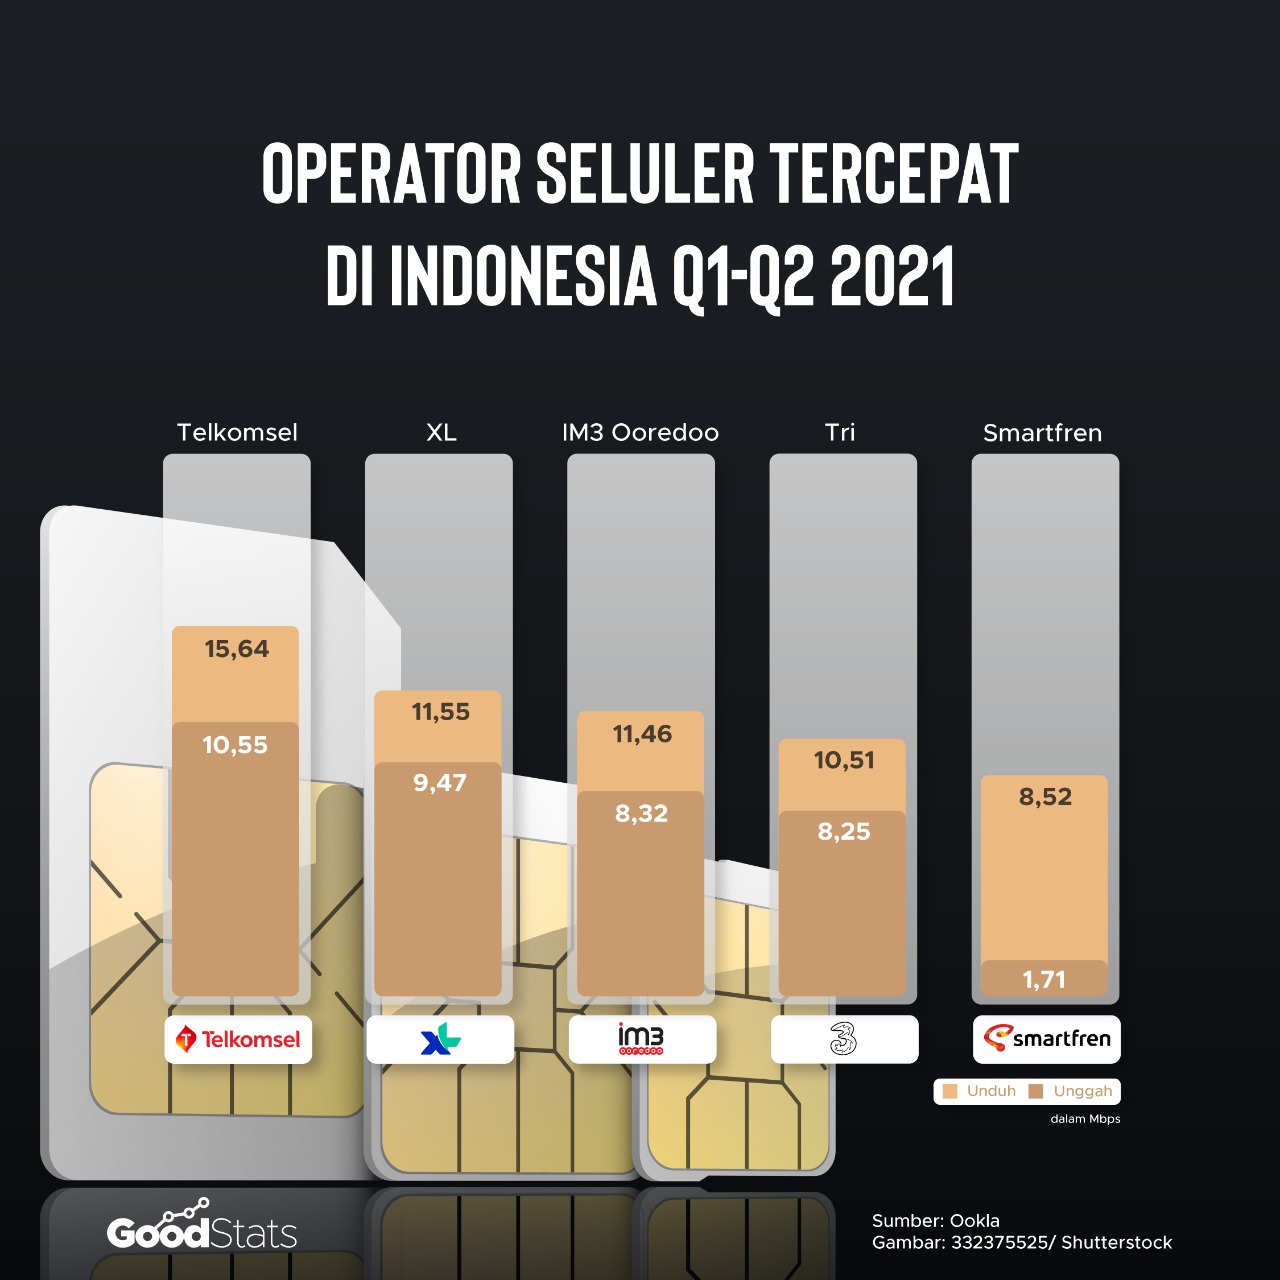 Operator seluler tercepat di Indonesia | Goodstats